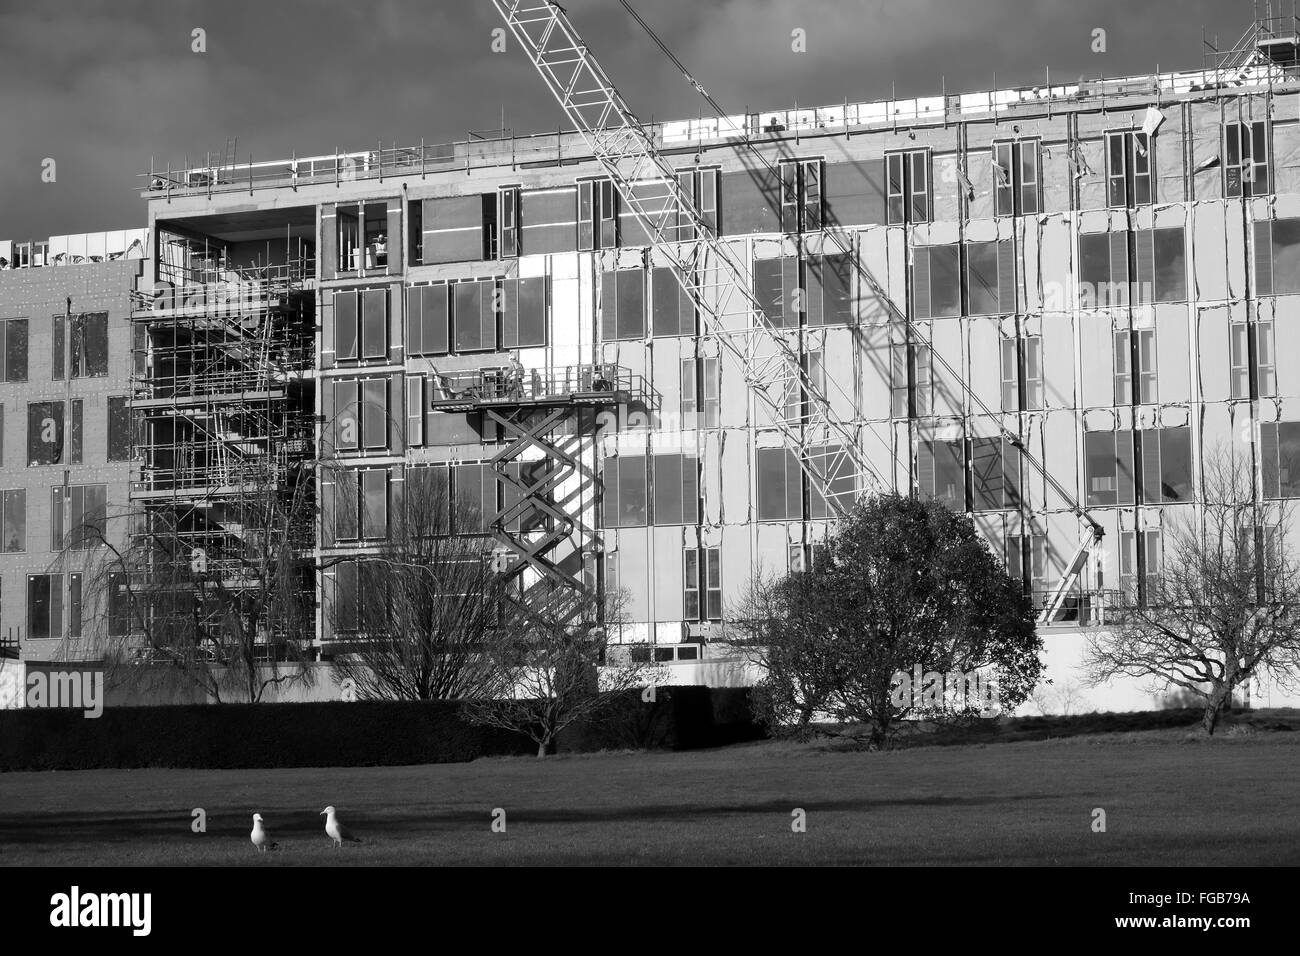 Aufbau und die Entwicklung arbeitet derzeit an der University of Bath, einer der führenden Universitäten Großbritanniens. Februar 2016 Stockfoto